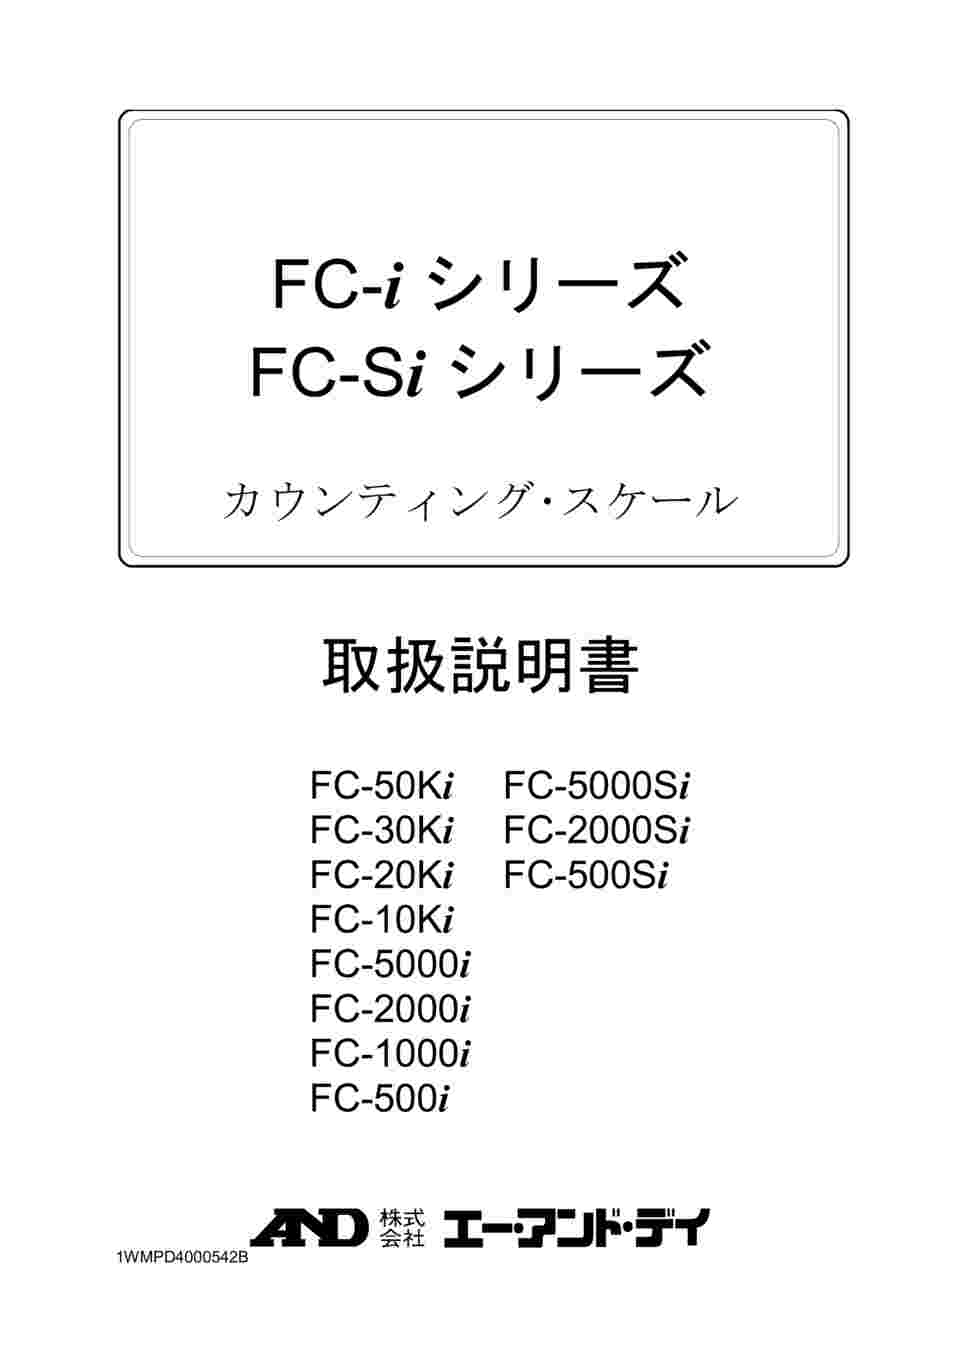 64-4049-87 個数計 FC-Si / FC-iシリーズ ひょう量:2000g 最小表示:0.2